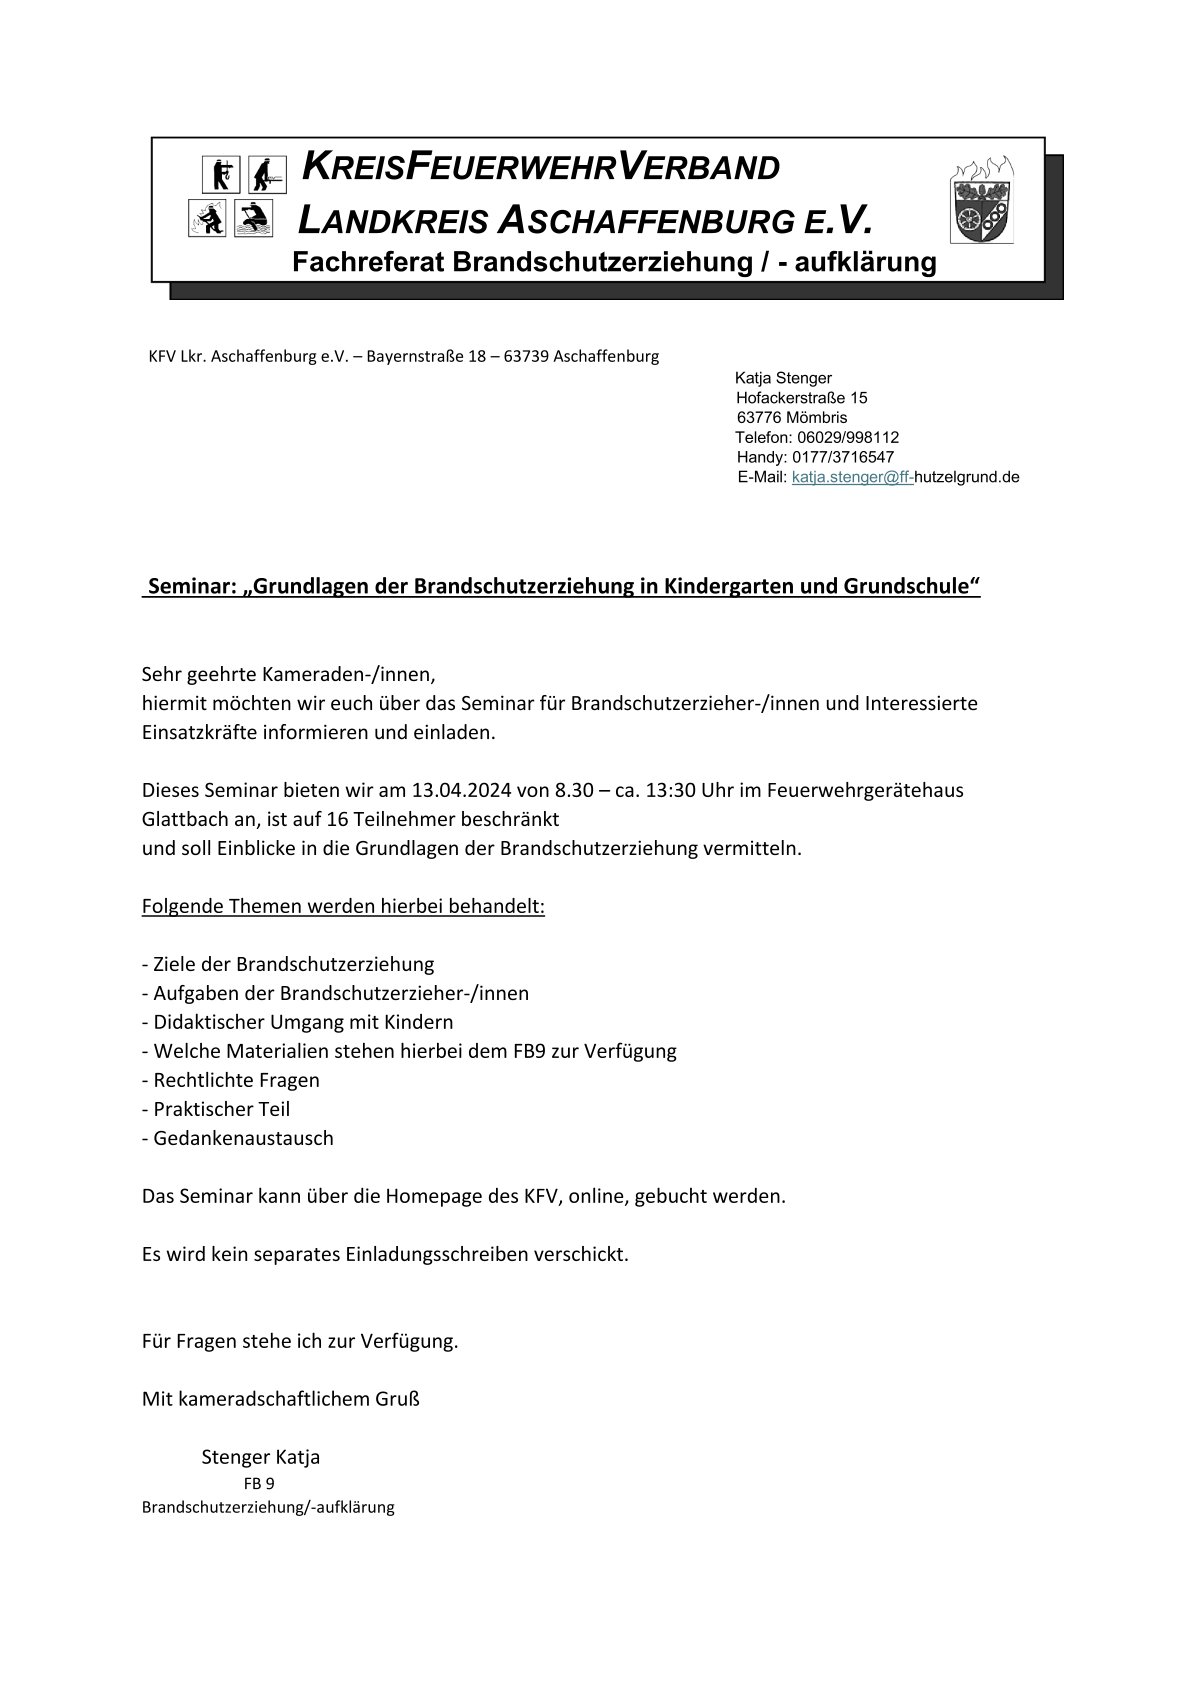 Einladungsschreiben_Seminar_Brandschutzerziehung_in_Kindergarten_und_Grundschule.jpg